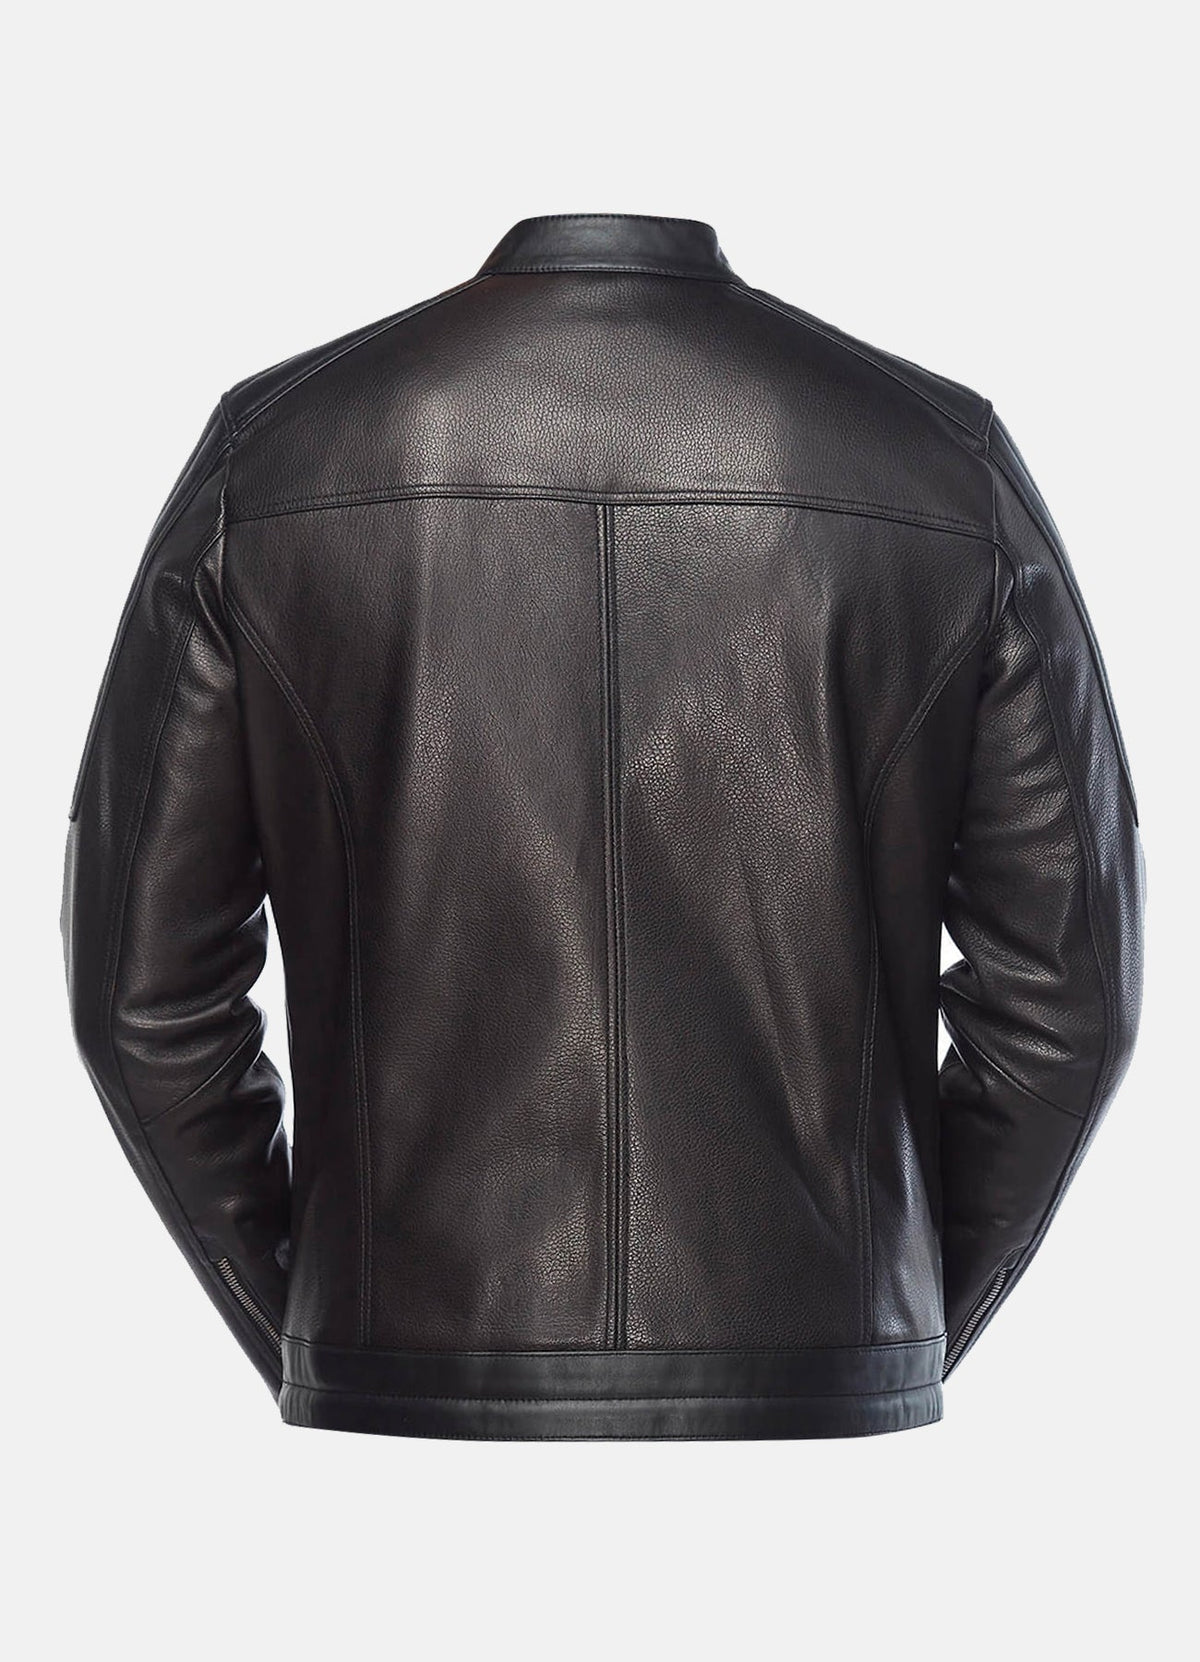 Mens Authentic Black Biker Leather Jacket